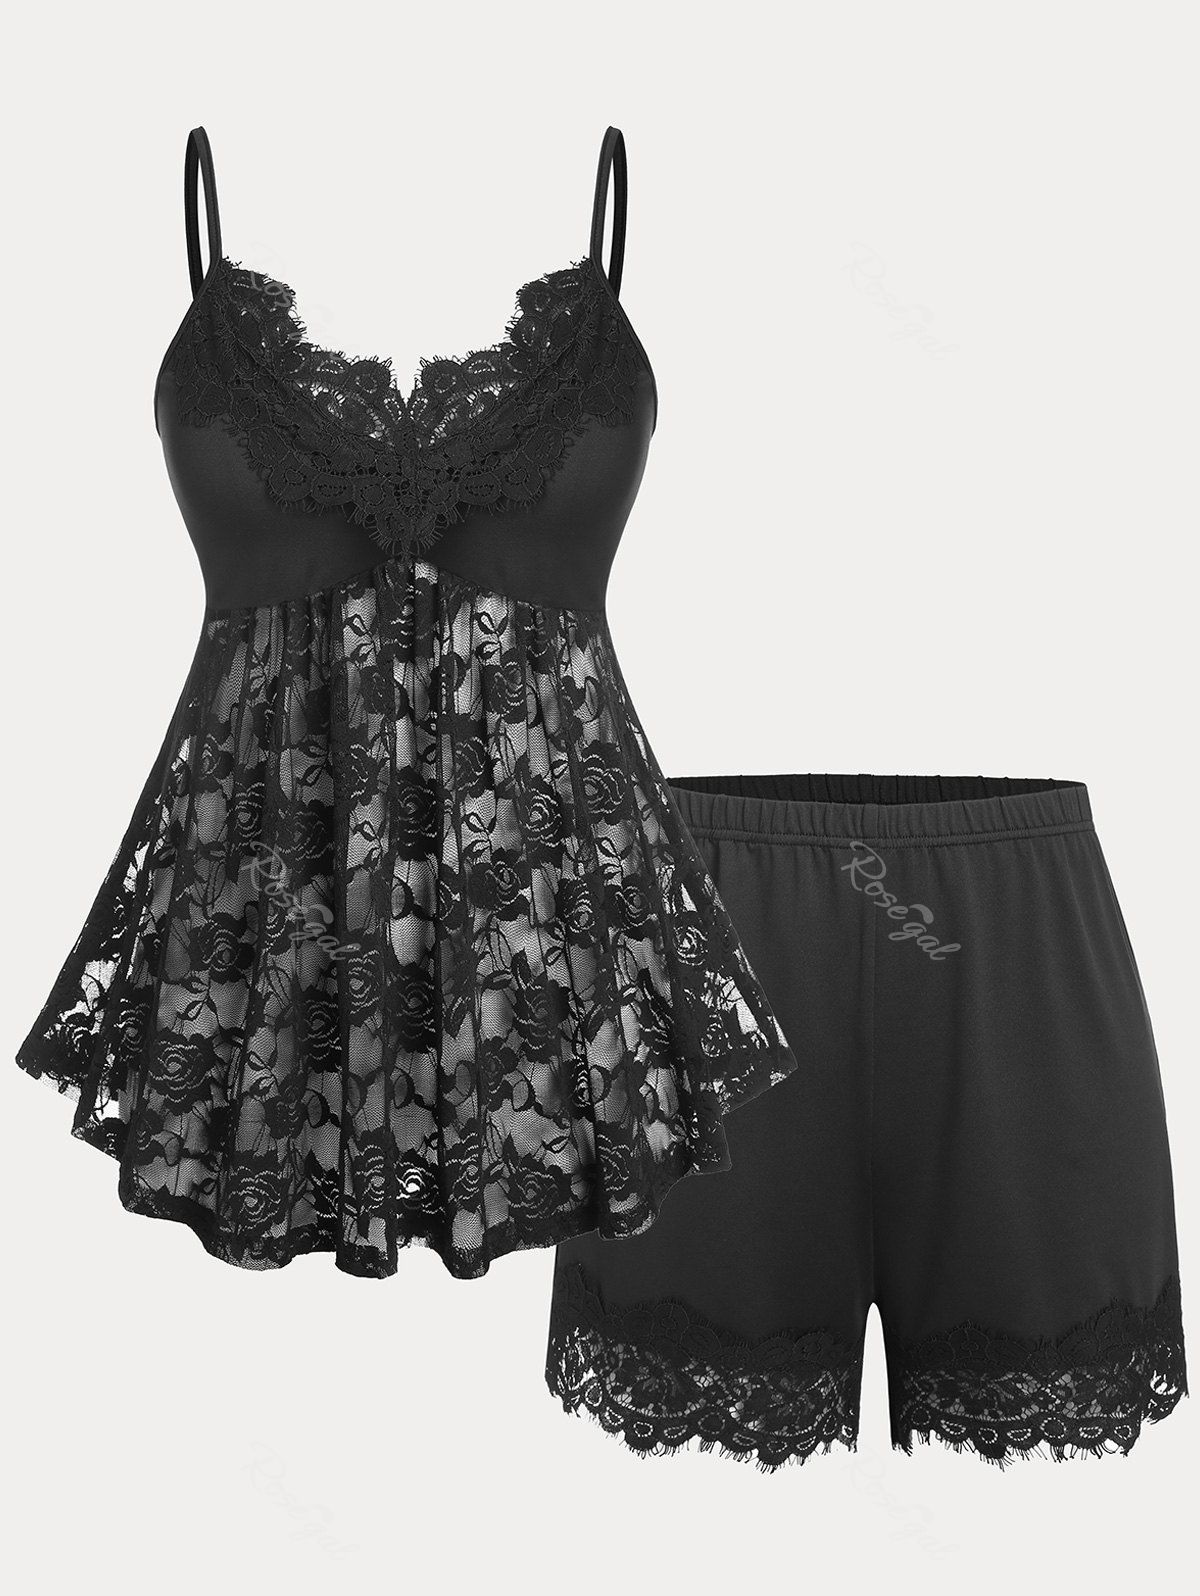 New Rose Lace Insert Shorts Plus Size Pajamas Set  